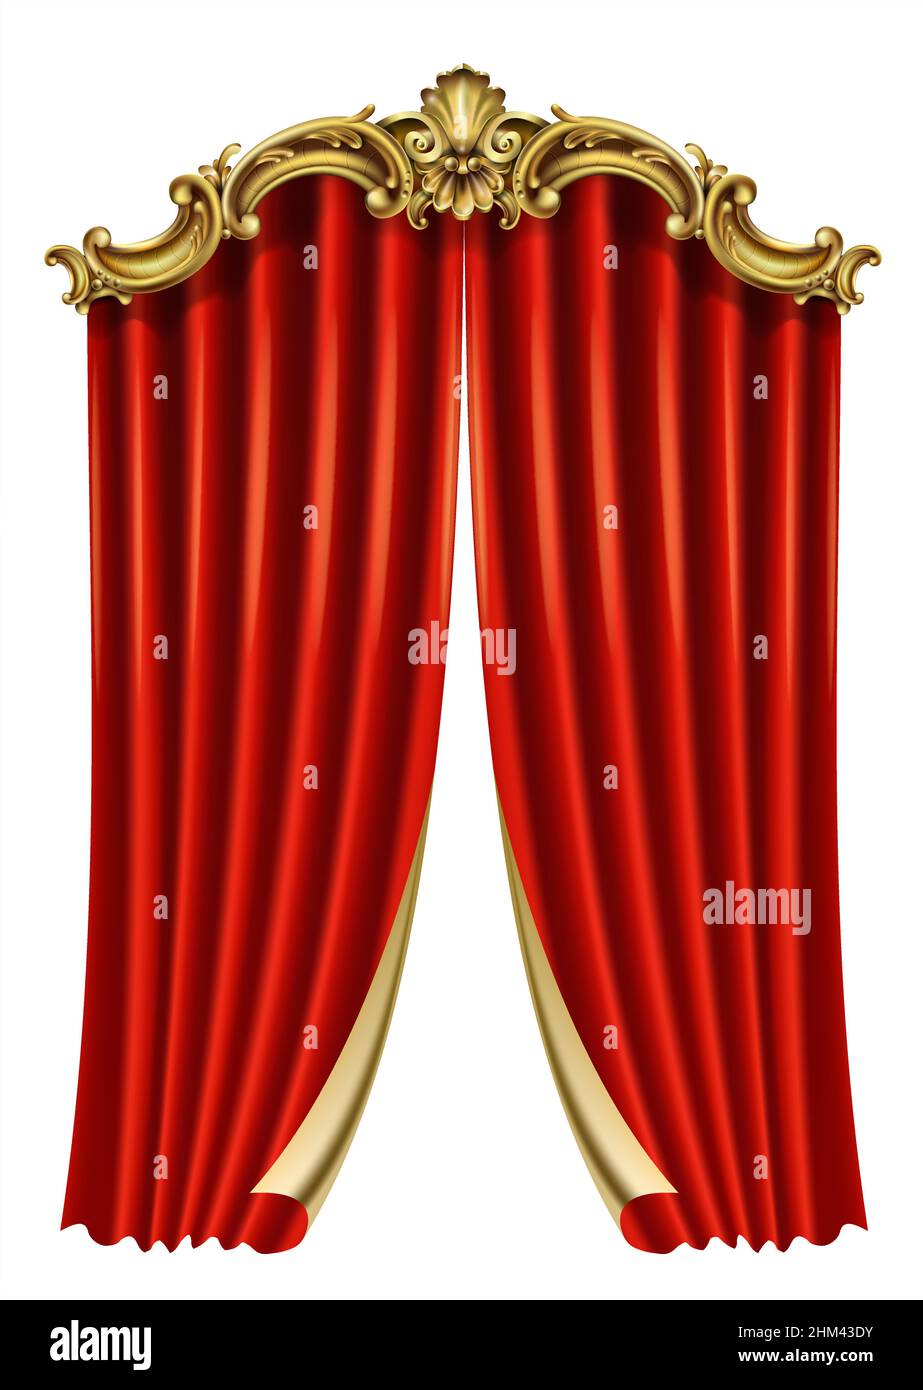 Rideau baroque rococo rouge classique doré.Graphiques vectoriels.Cadre de luxe pour la peinture ou la couverture de carte postale Illustration de Vecteur